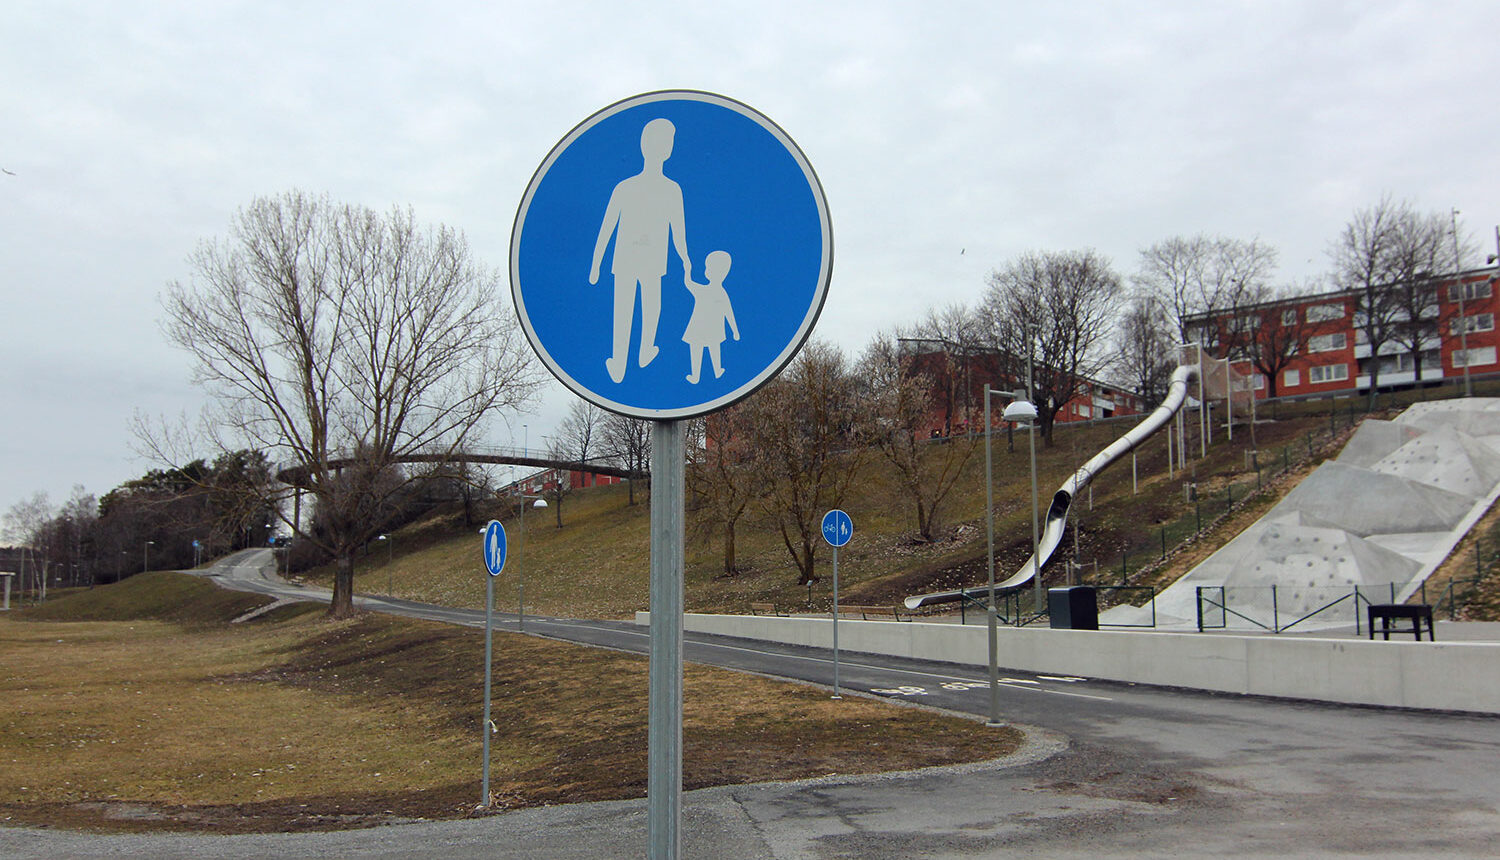 Skylt för Gångbana i Hjulsta. I bakgrunden skylt för gång- och cykelbana.